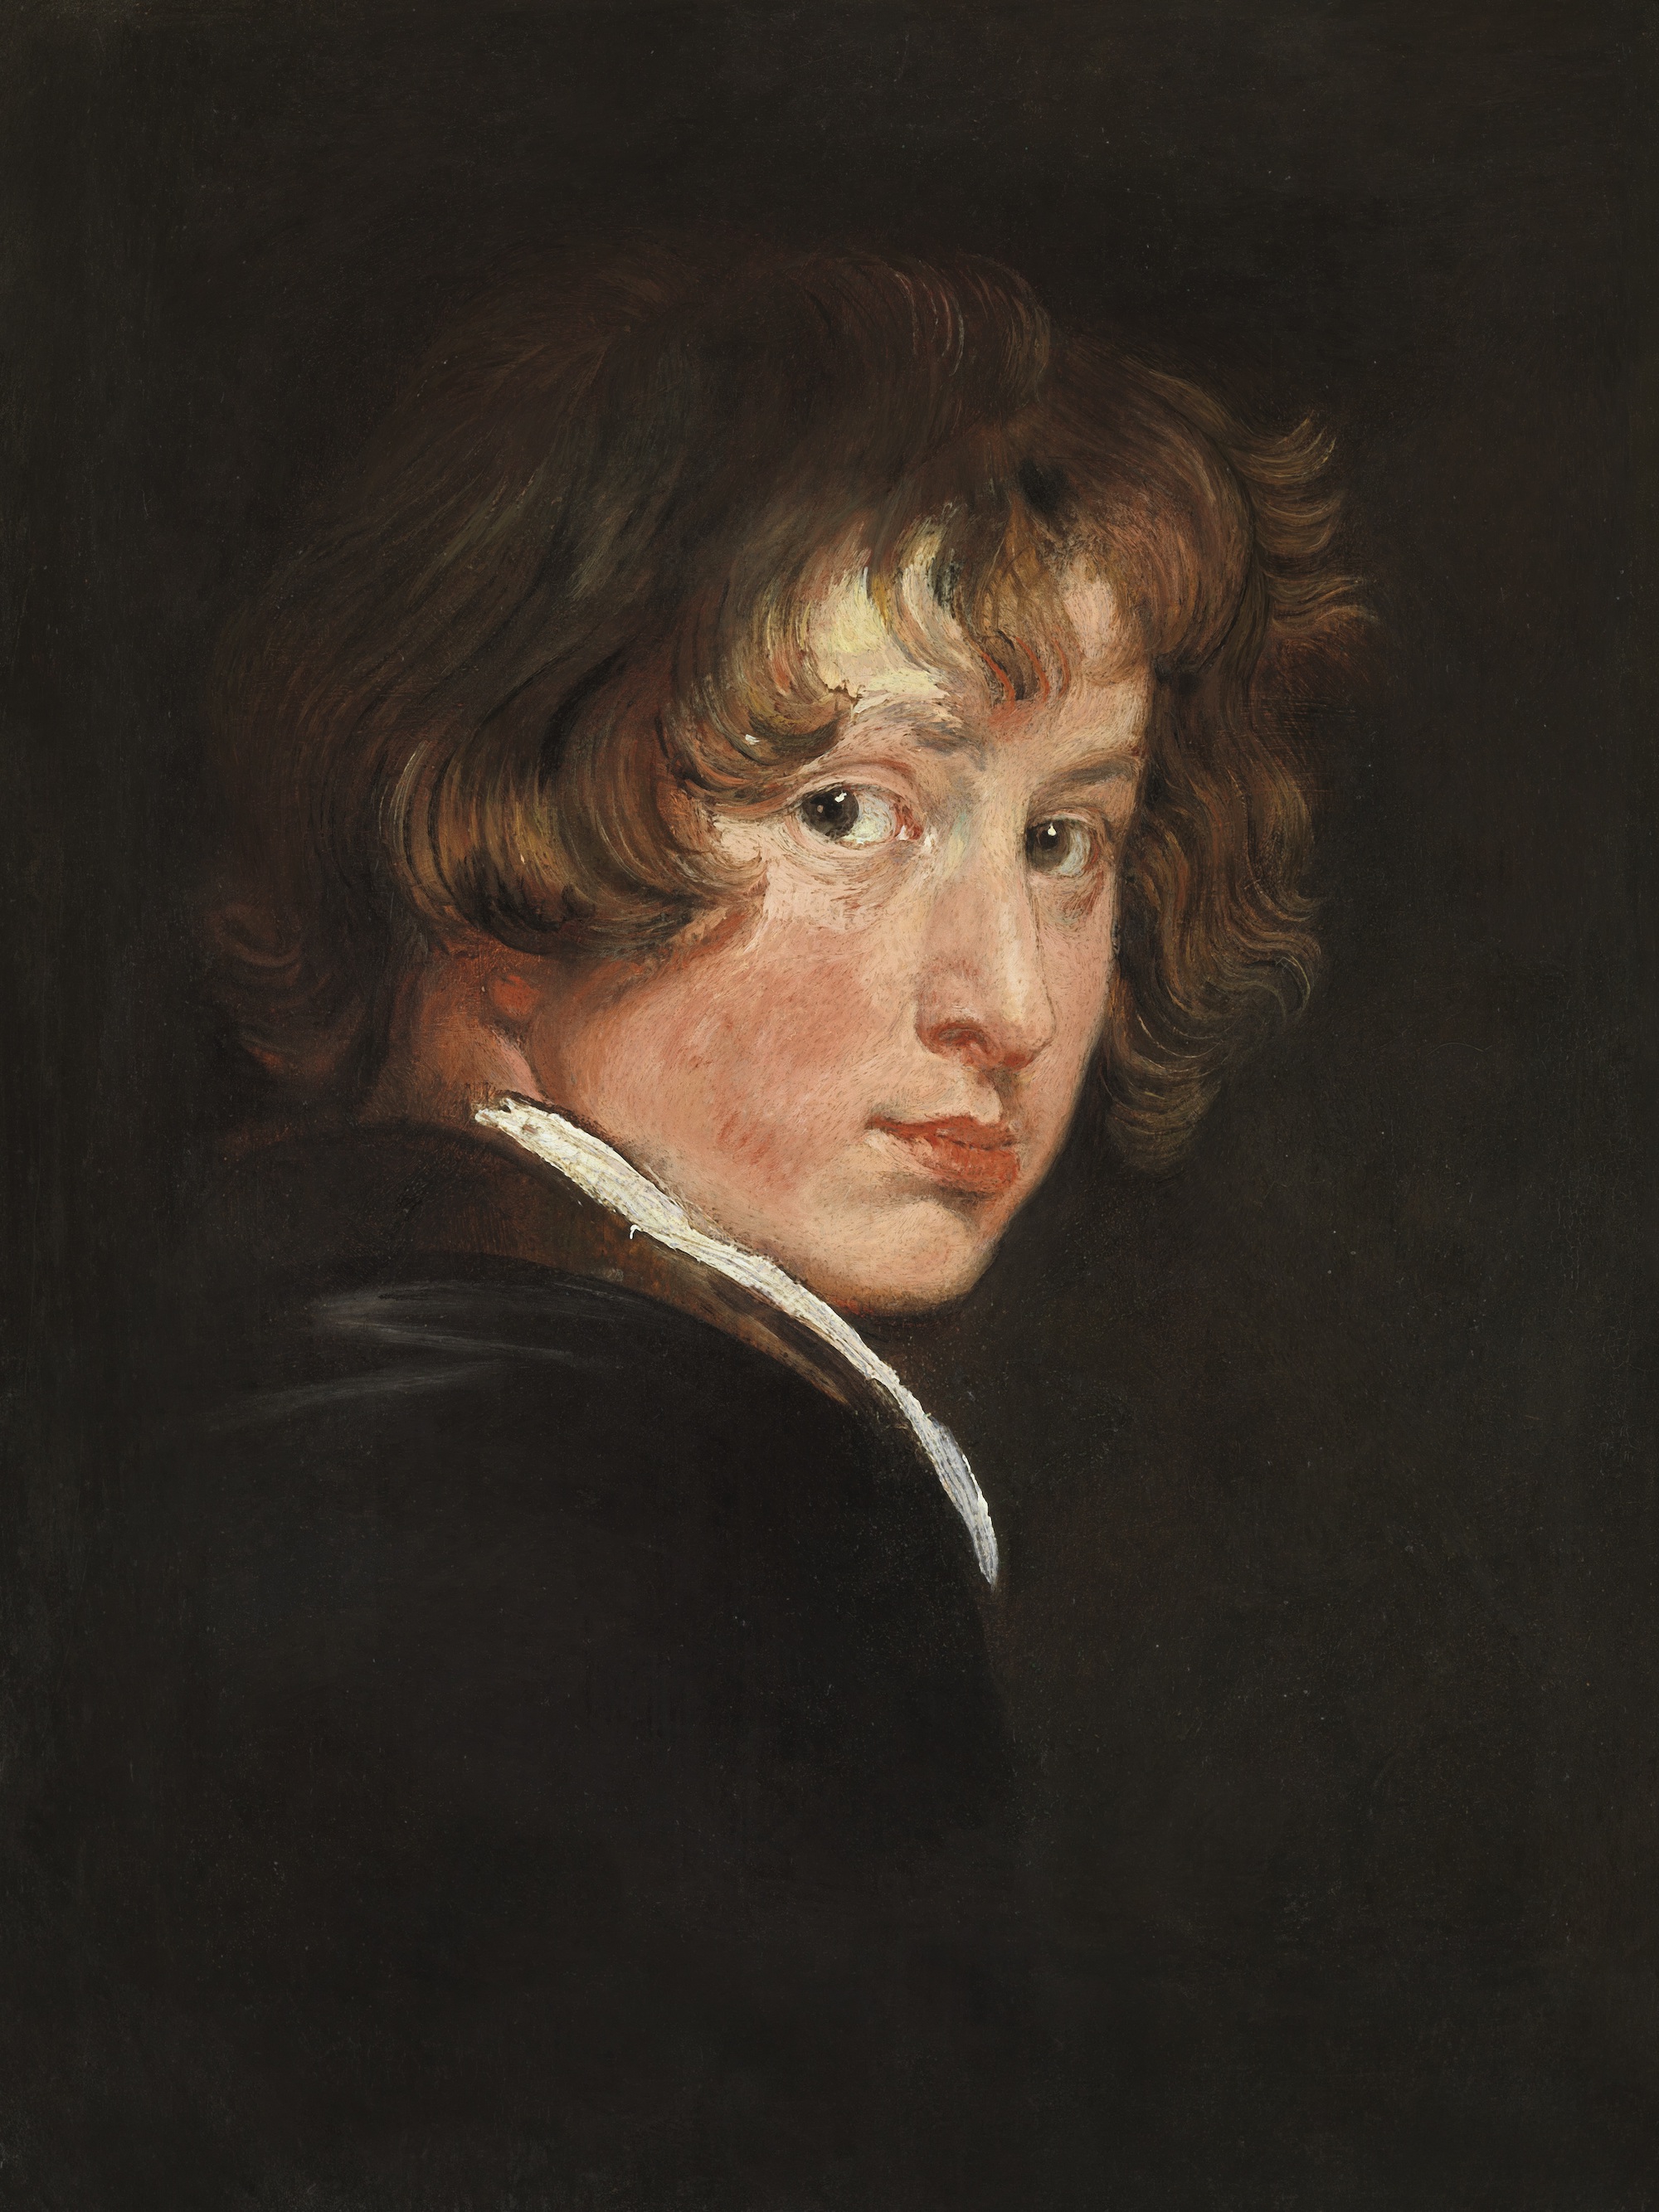 Zelfportret  by Anthony Van Dyck - 1613/14 Akademie der bildenden Künste, Wien